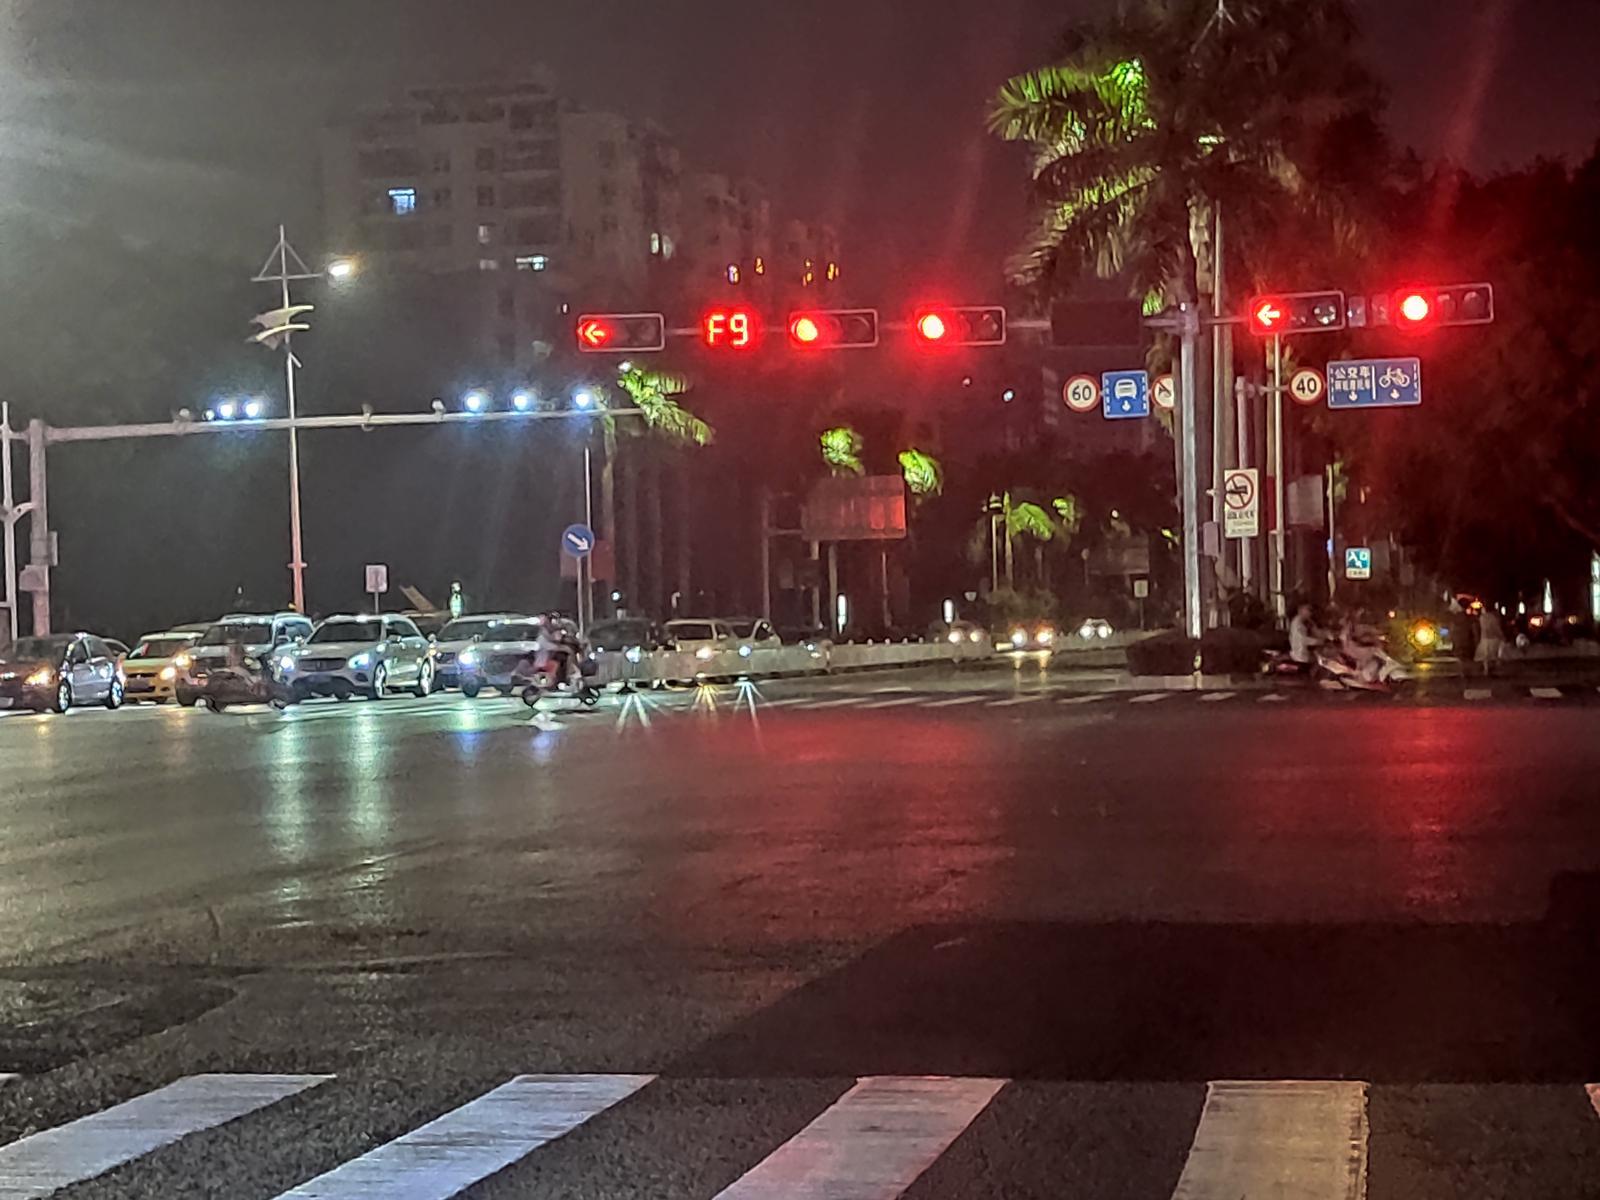 红灯路口照片图片